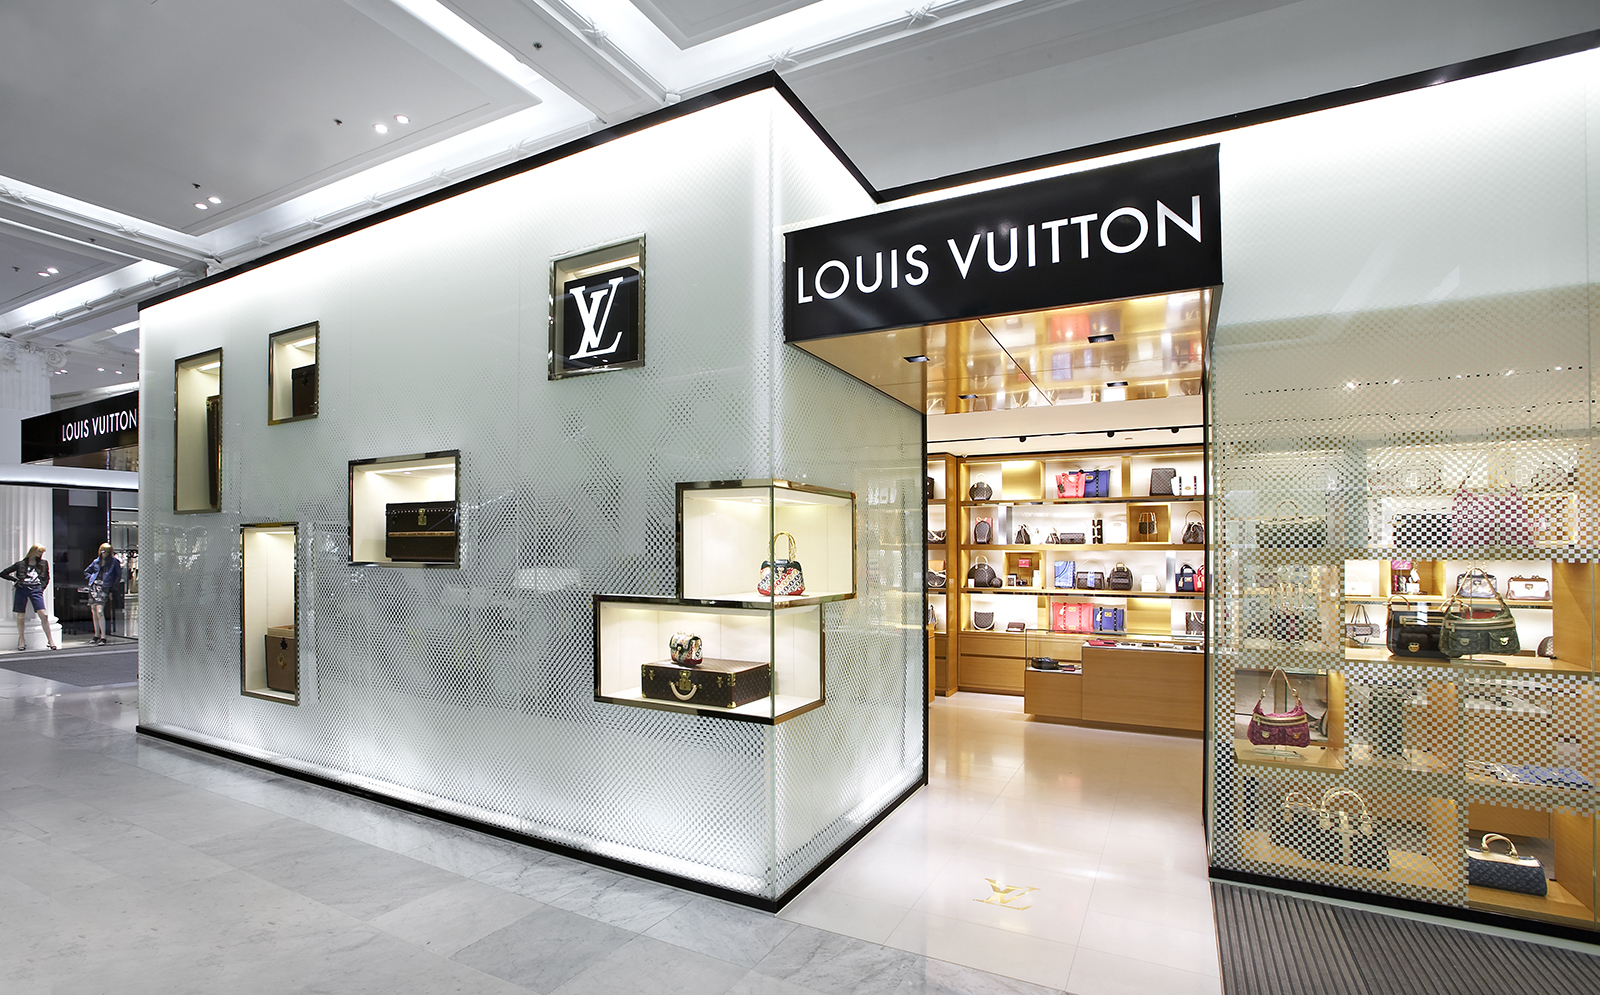 Louis Vuitton Selfridges Manchester This Better